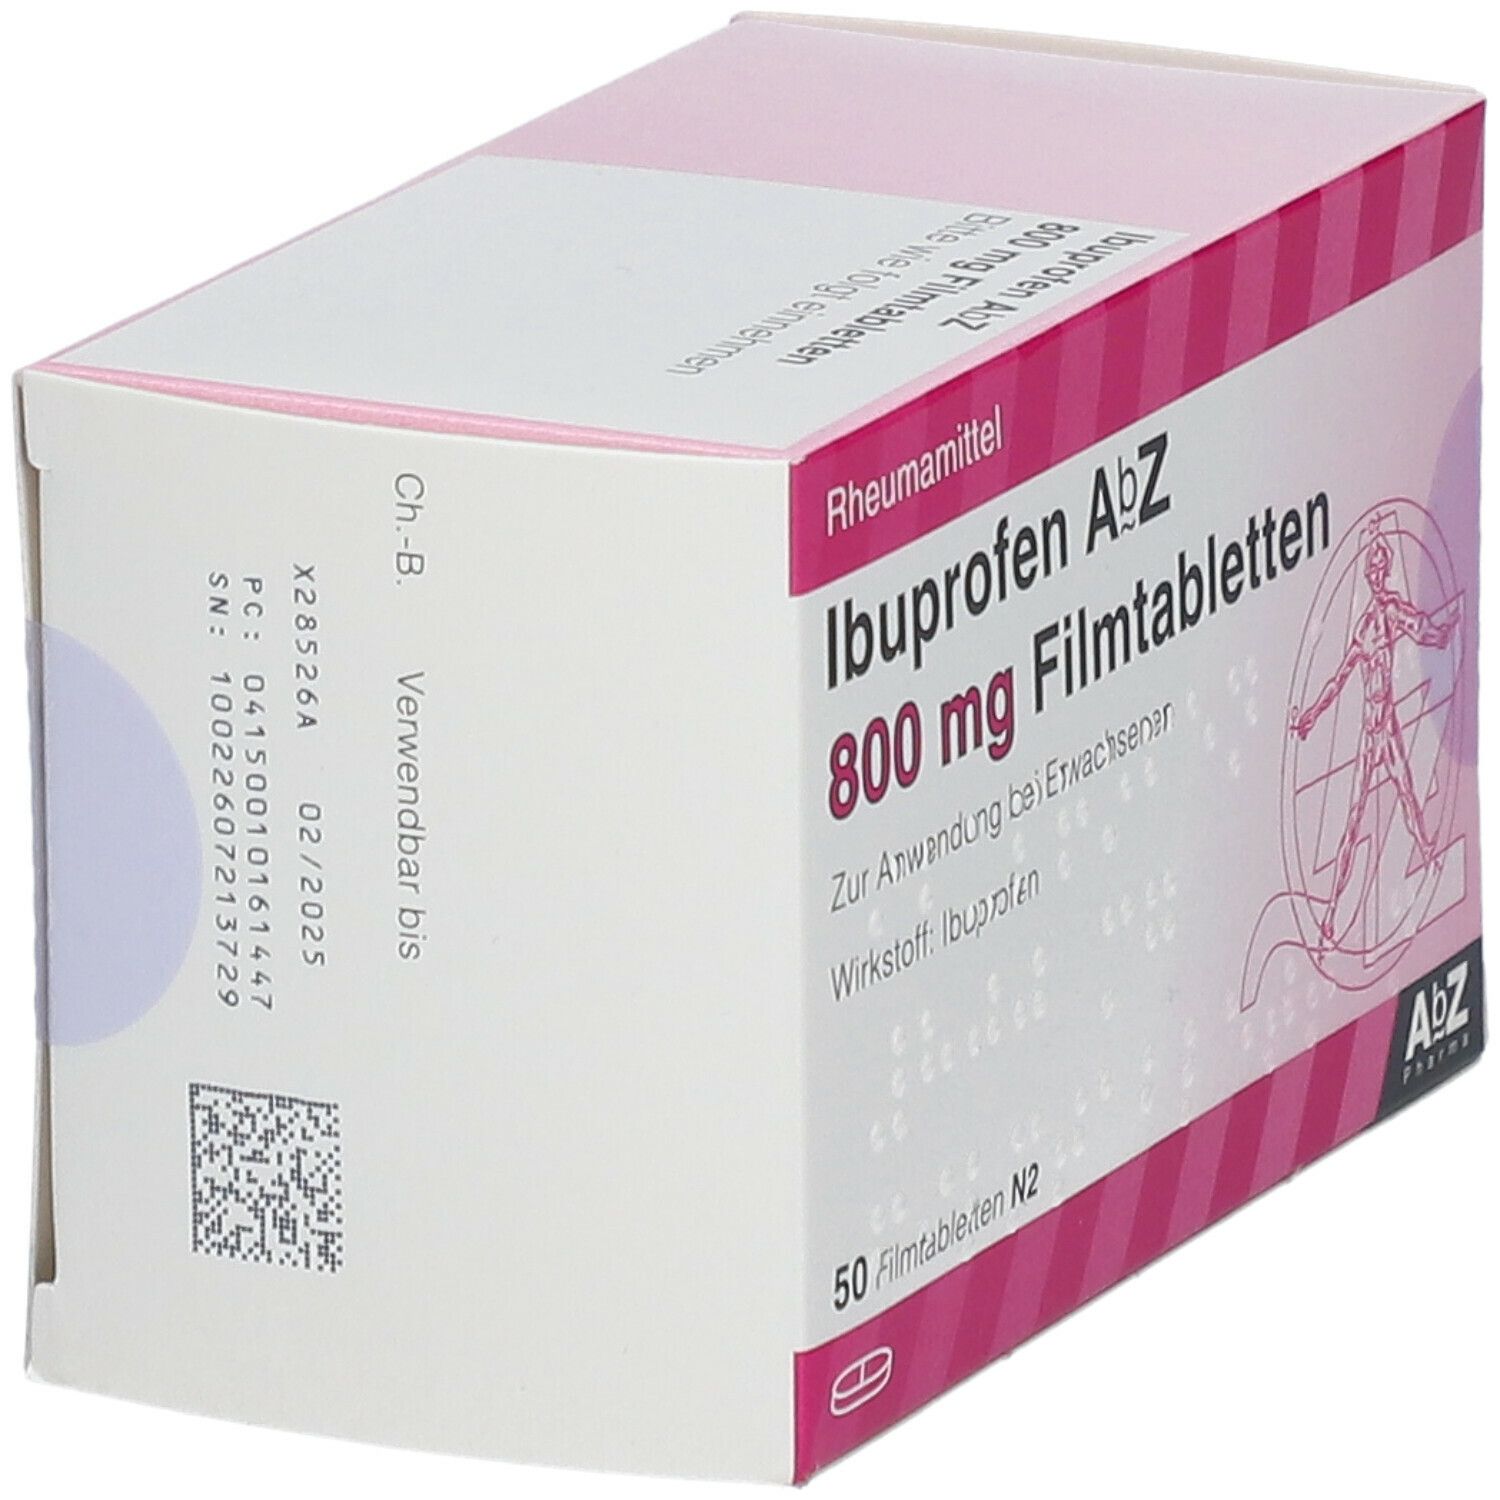 Ibuprofen AbZ 800Mg